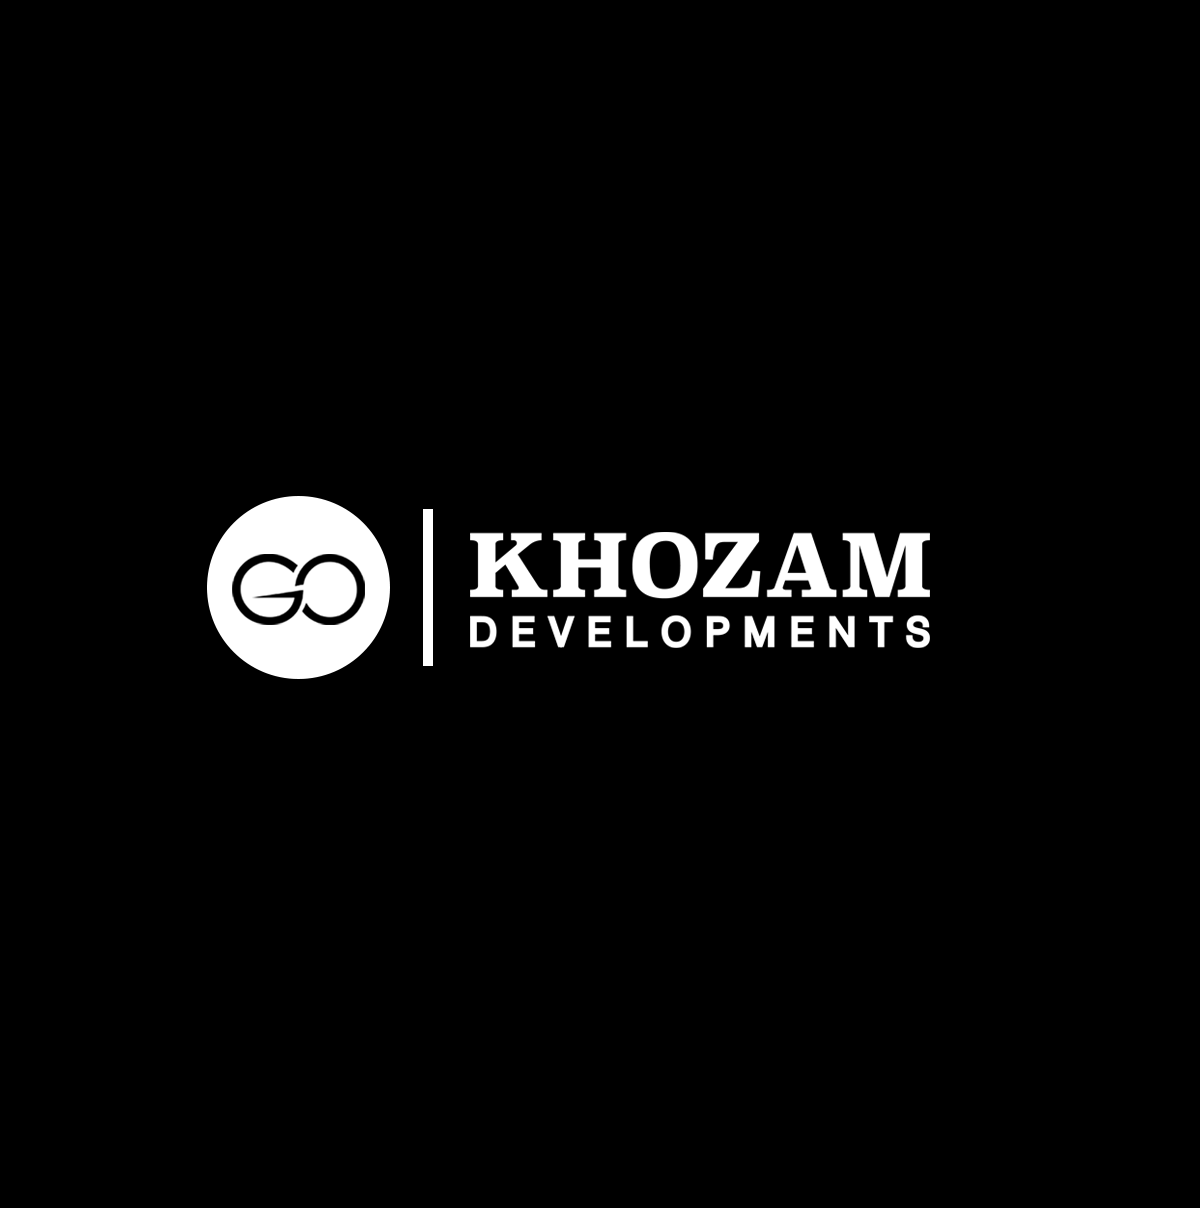 Khozam Development